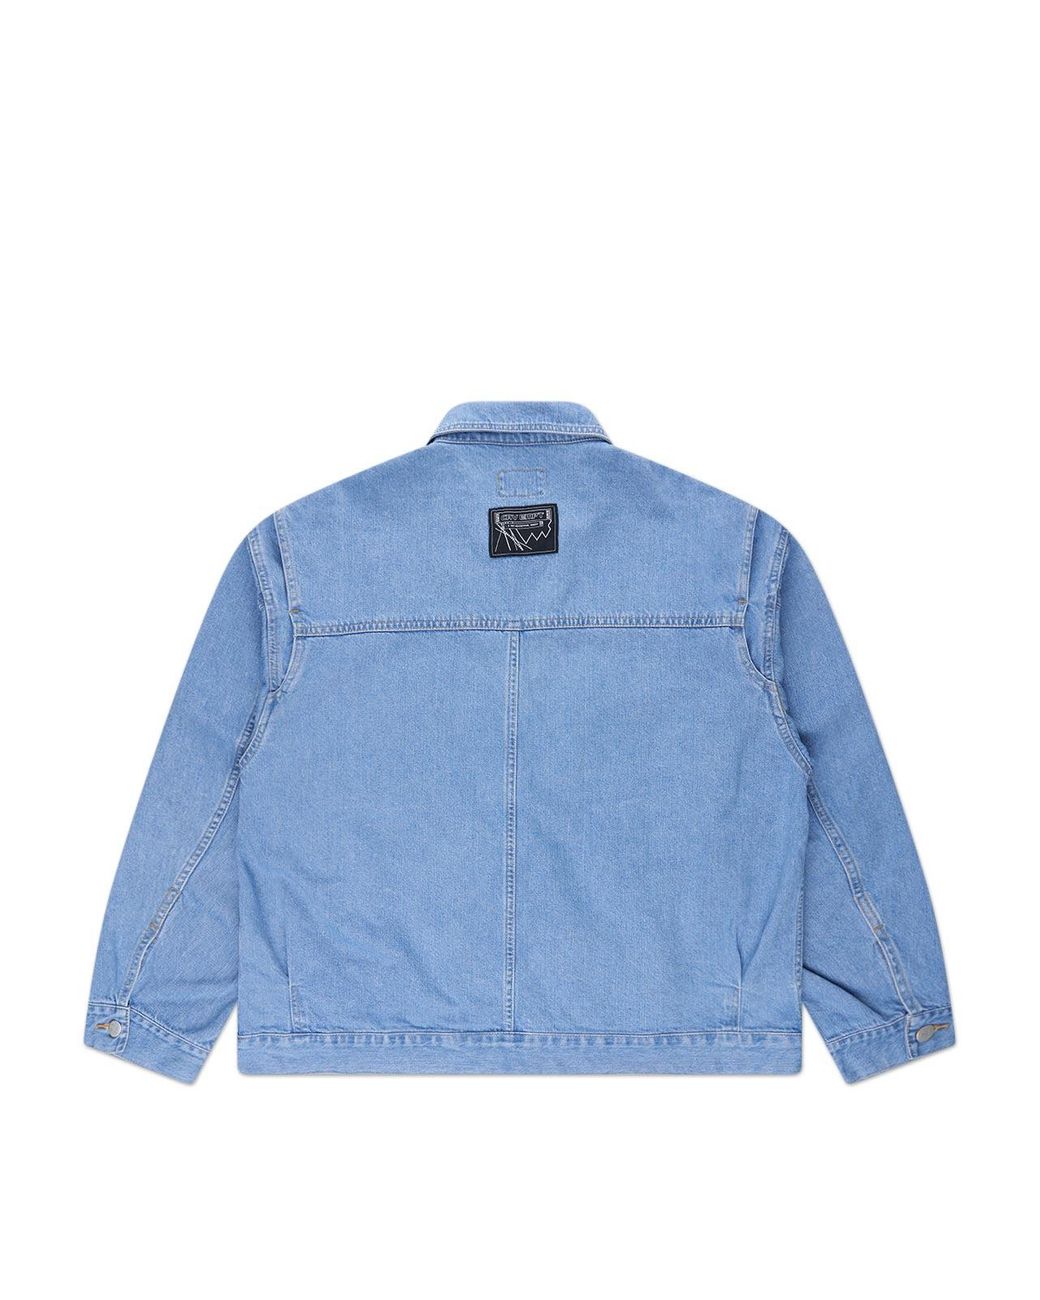 ジャケット/アウター Gジャン/デニムジャケット Cav Empt Design Wash Denim Jacket in Blue | Lyst